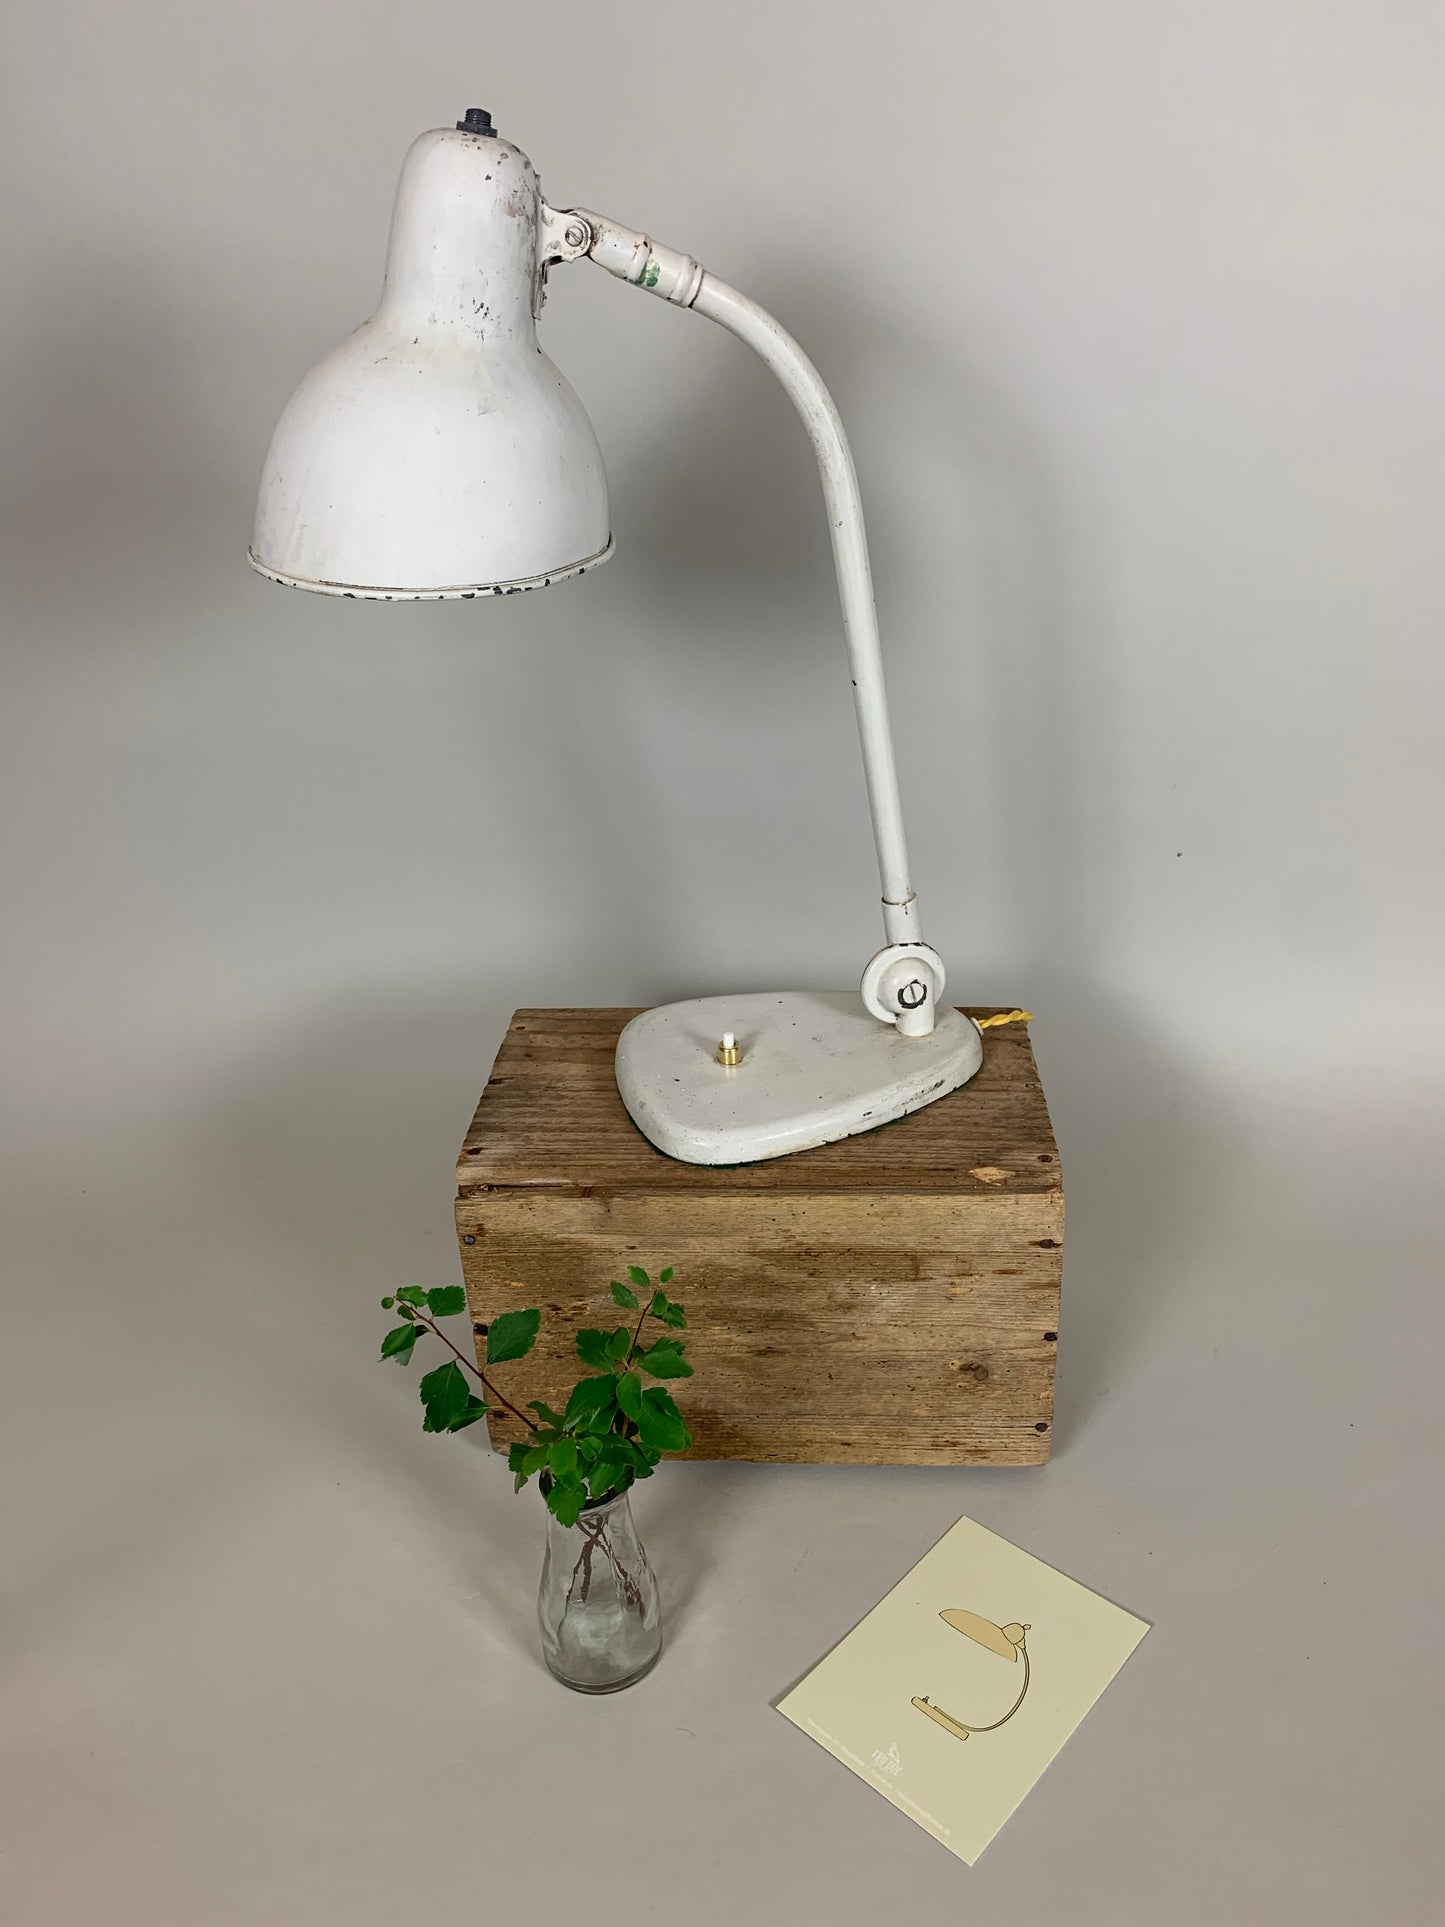 Schöne Vintage Lampe, die Vilhelm Lauritzen zugeschrieben wird